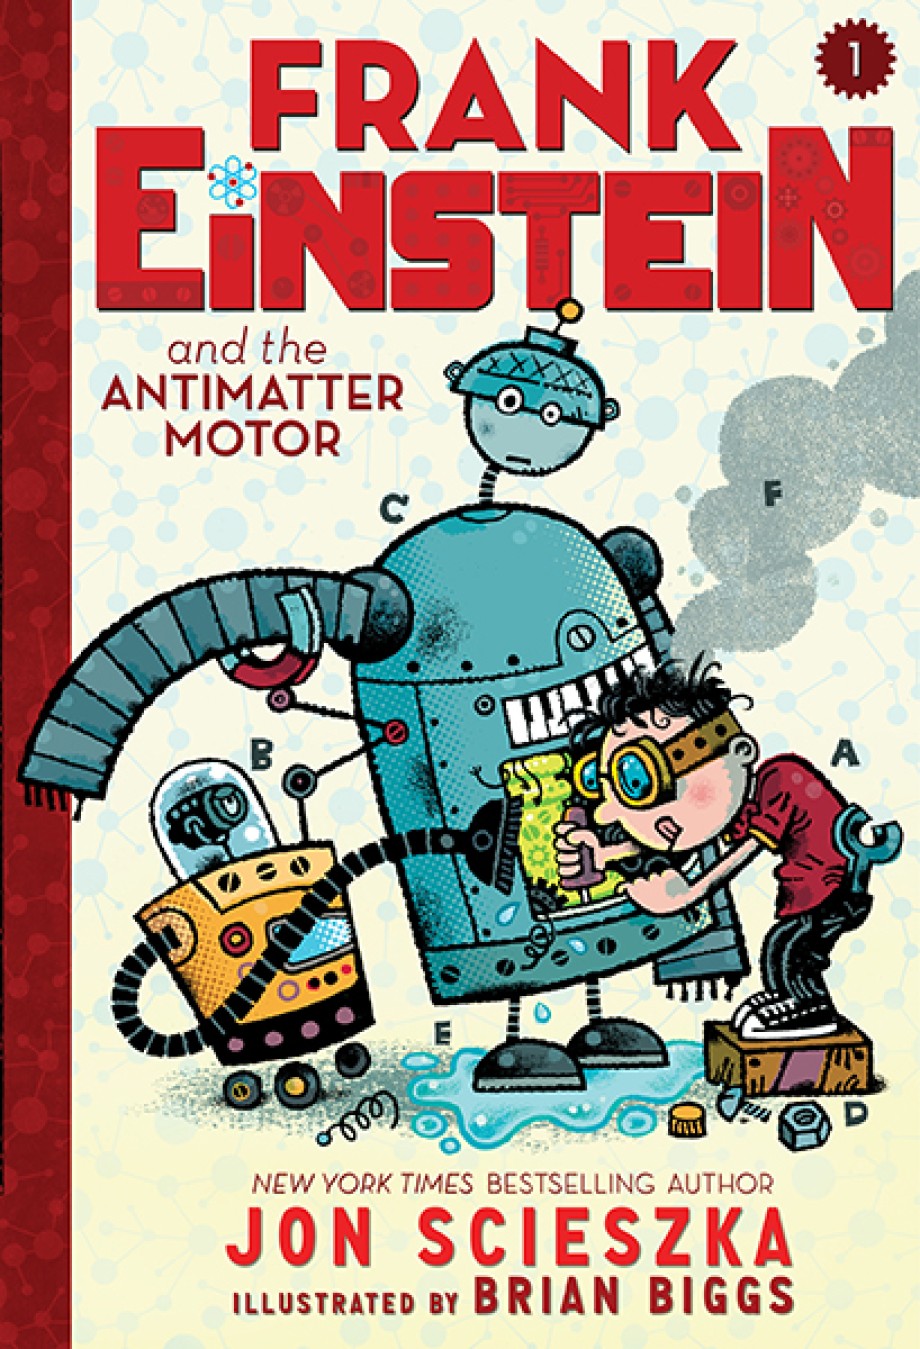 Frank Einstein and the Antimatter Motor (Frank Einstein series #1) Book One